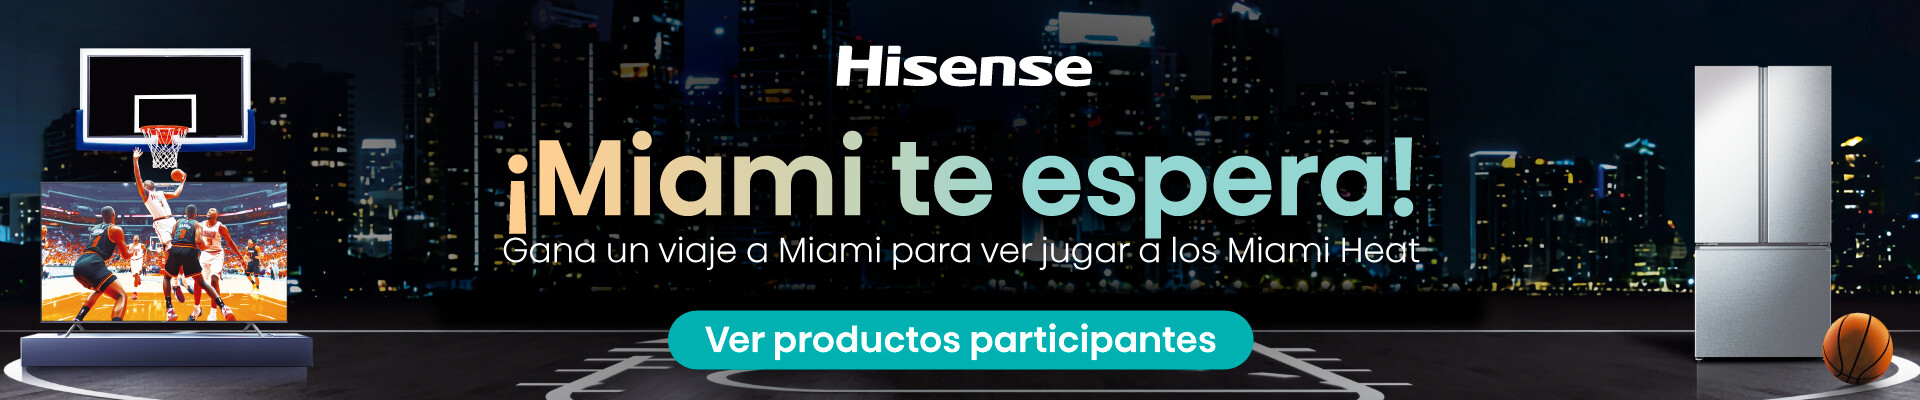 Hisense - Miami te espera